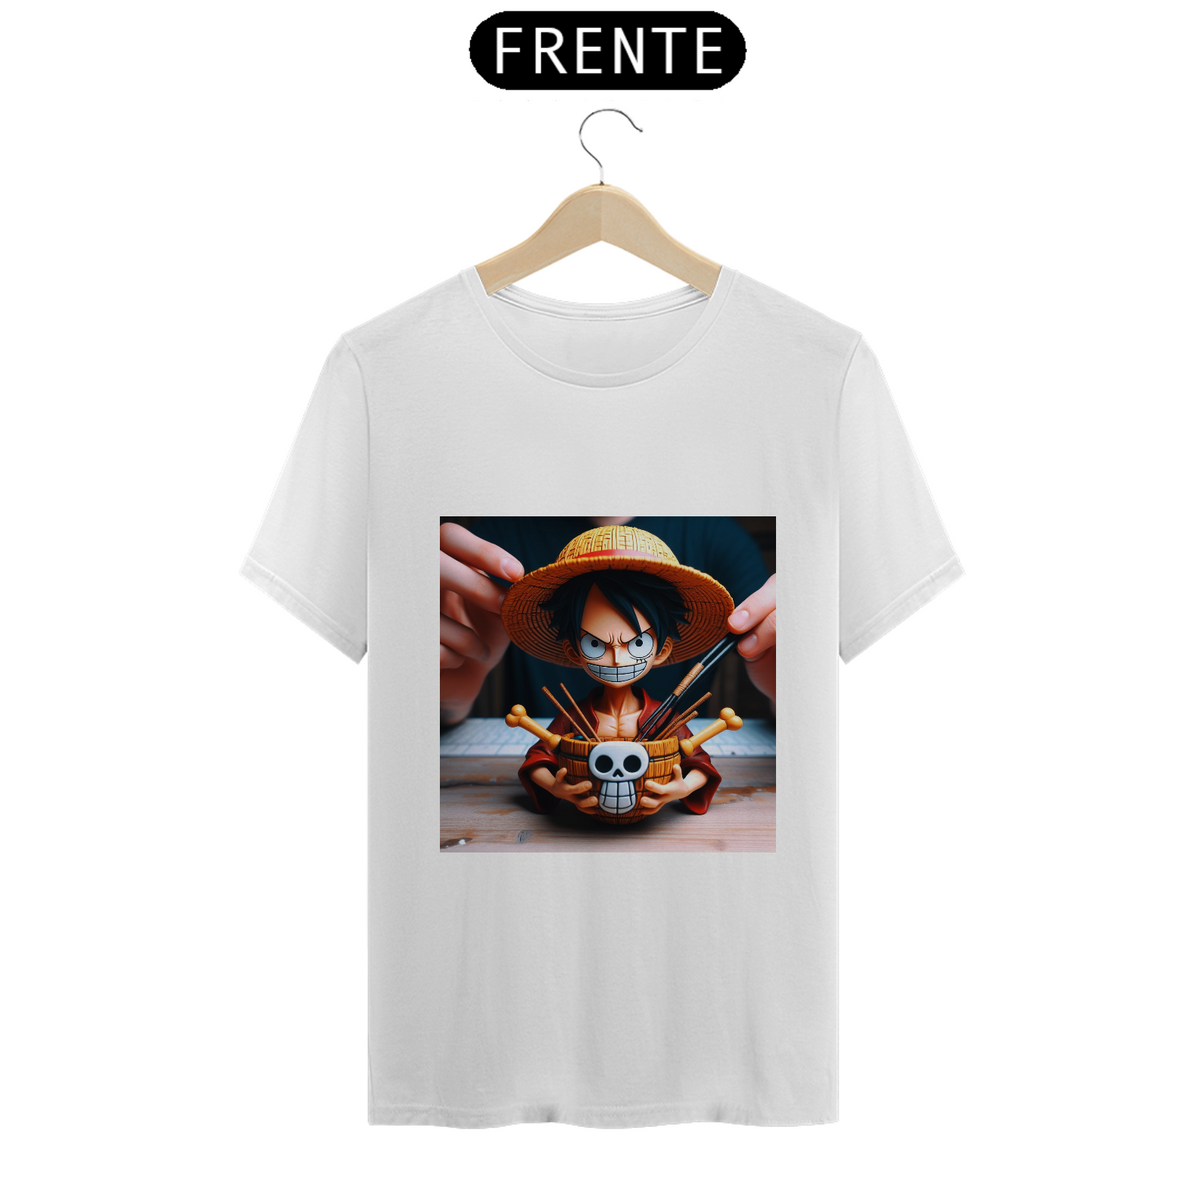 Nome do produto: T-Shirt Monkey D. Luffy - O Chapéu de Palha (One Piece)